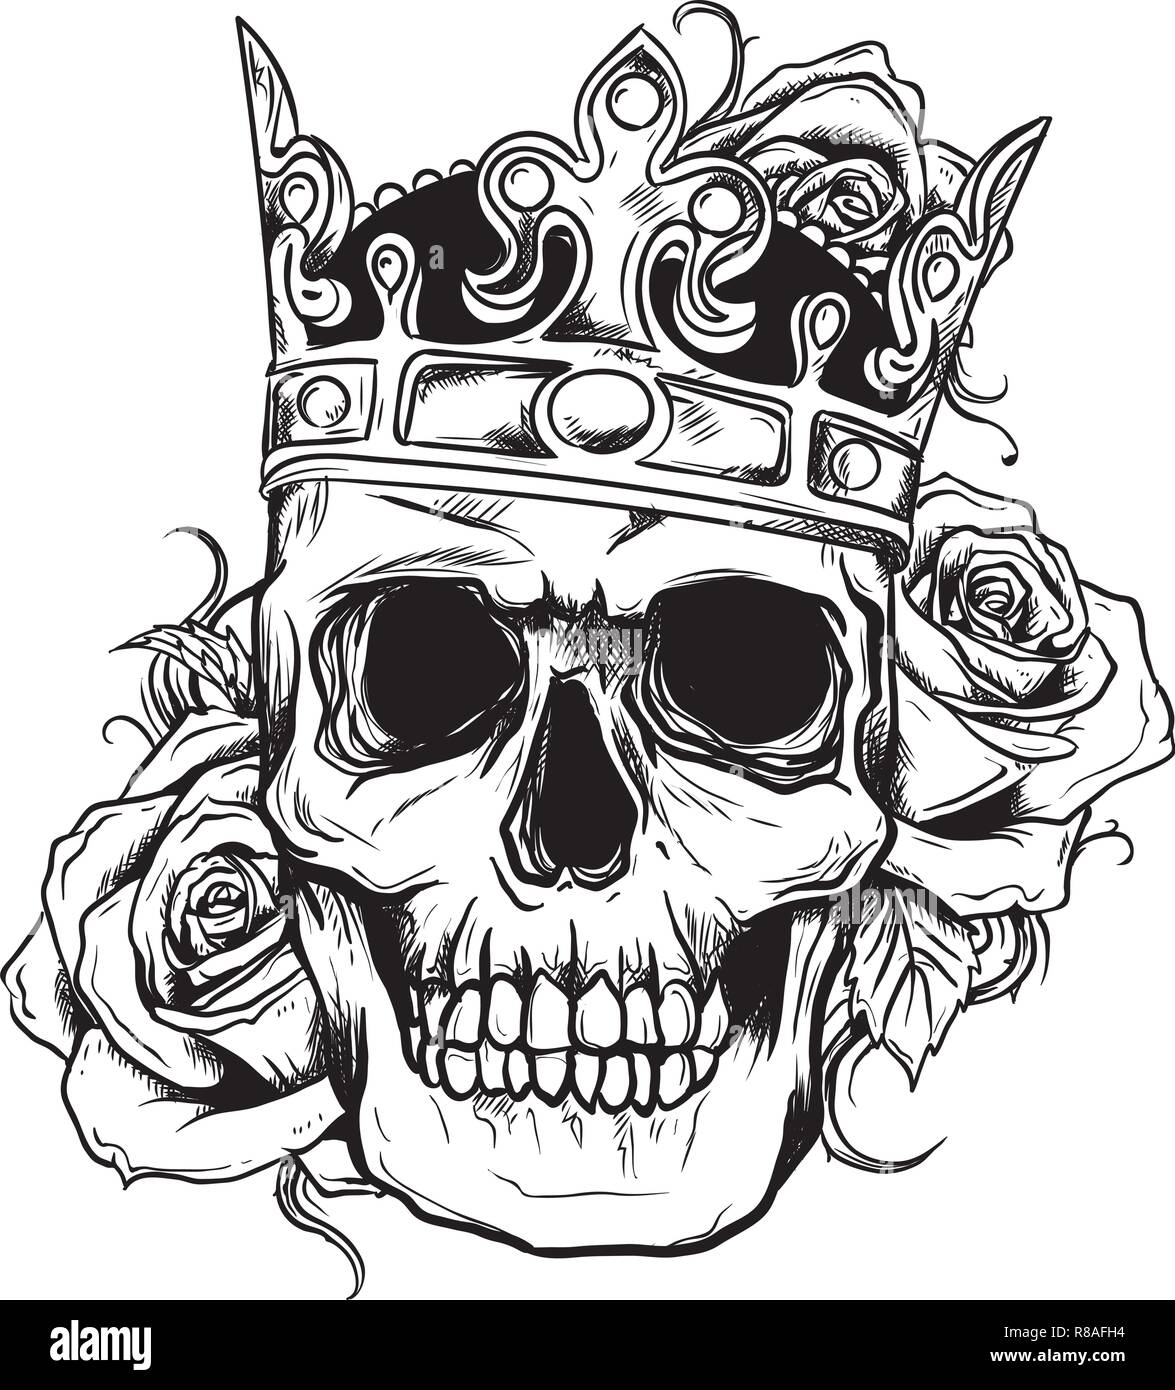 La mort de l'illustration vectorielle avec des roses de la couronne de crâne Illustration de Vecteur